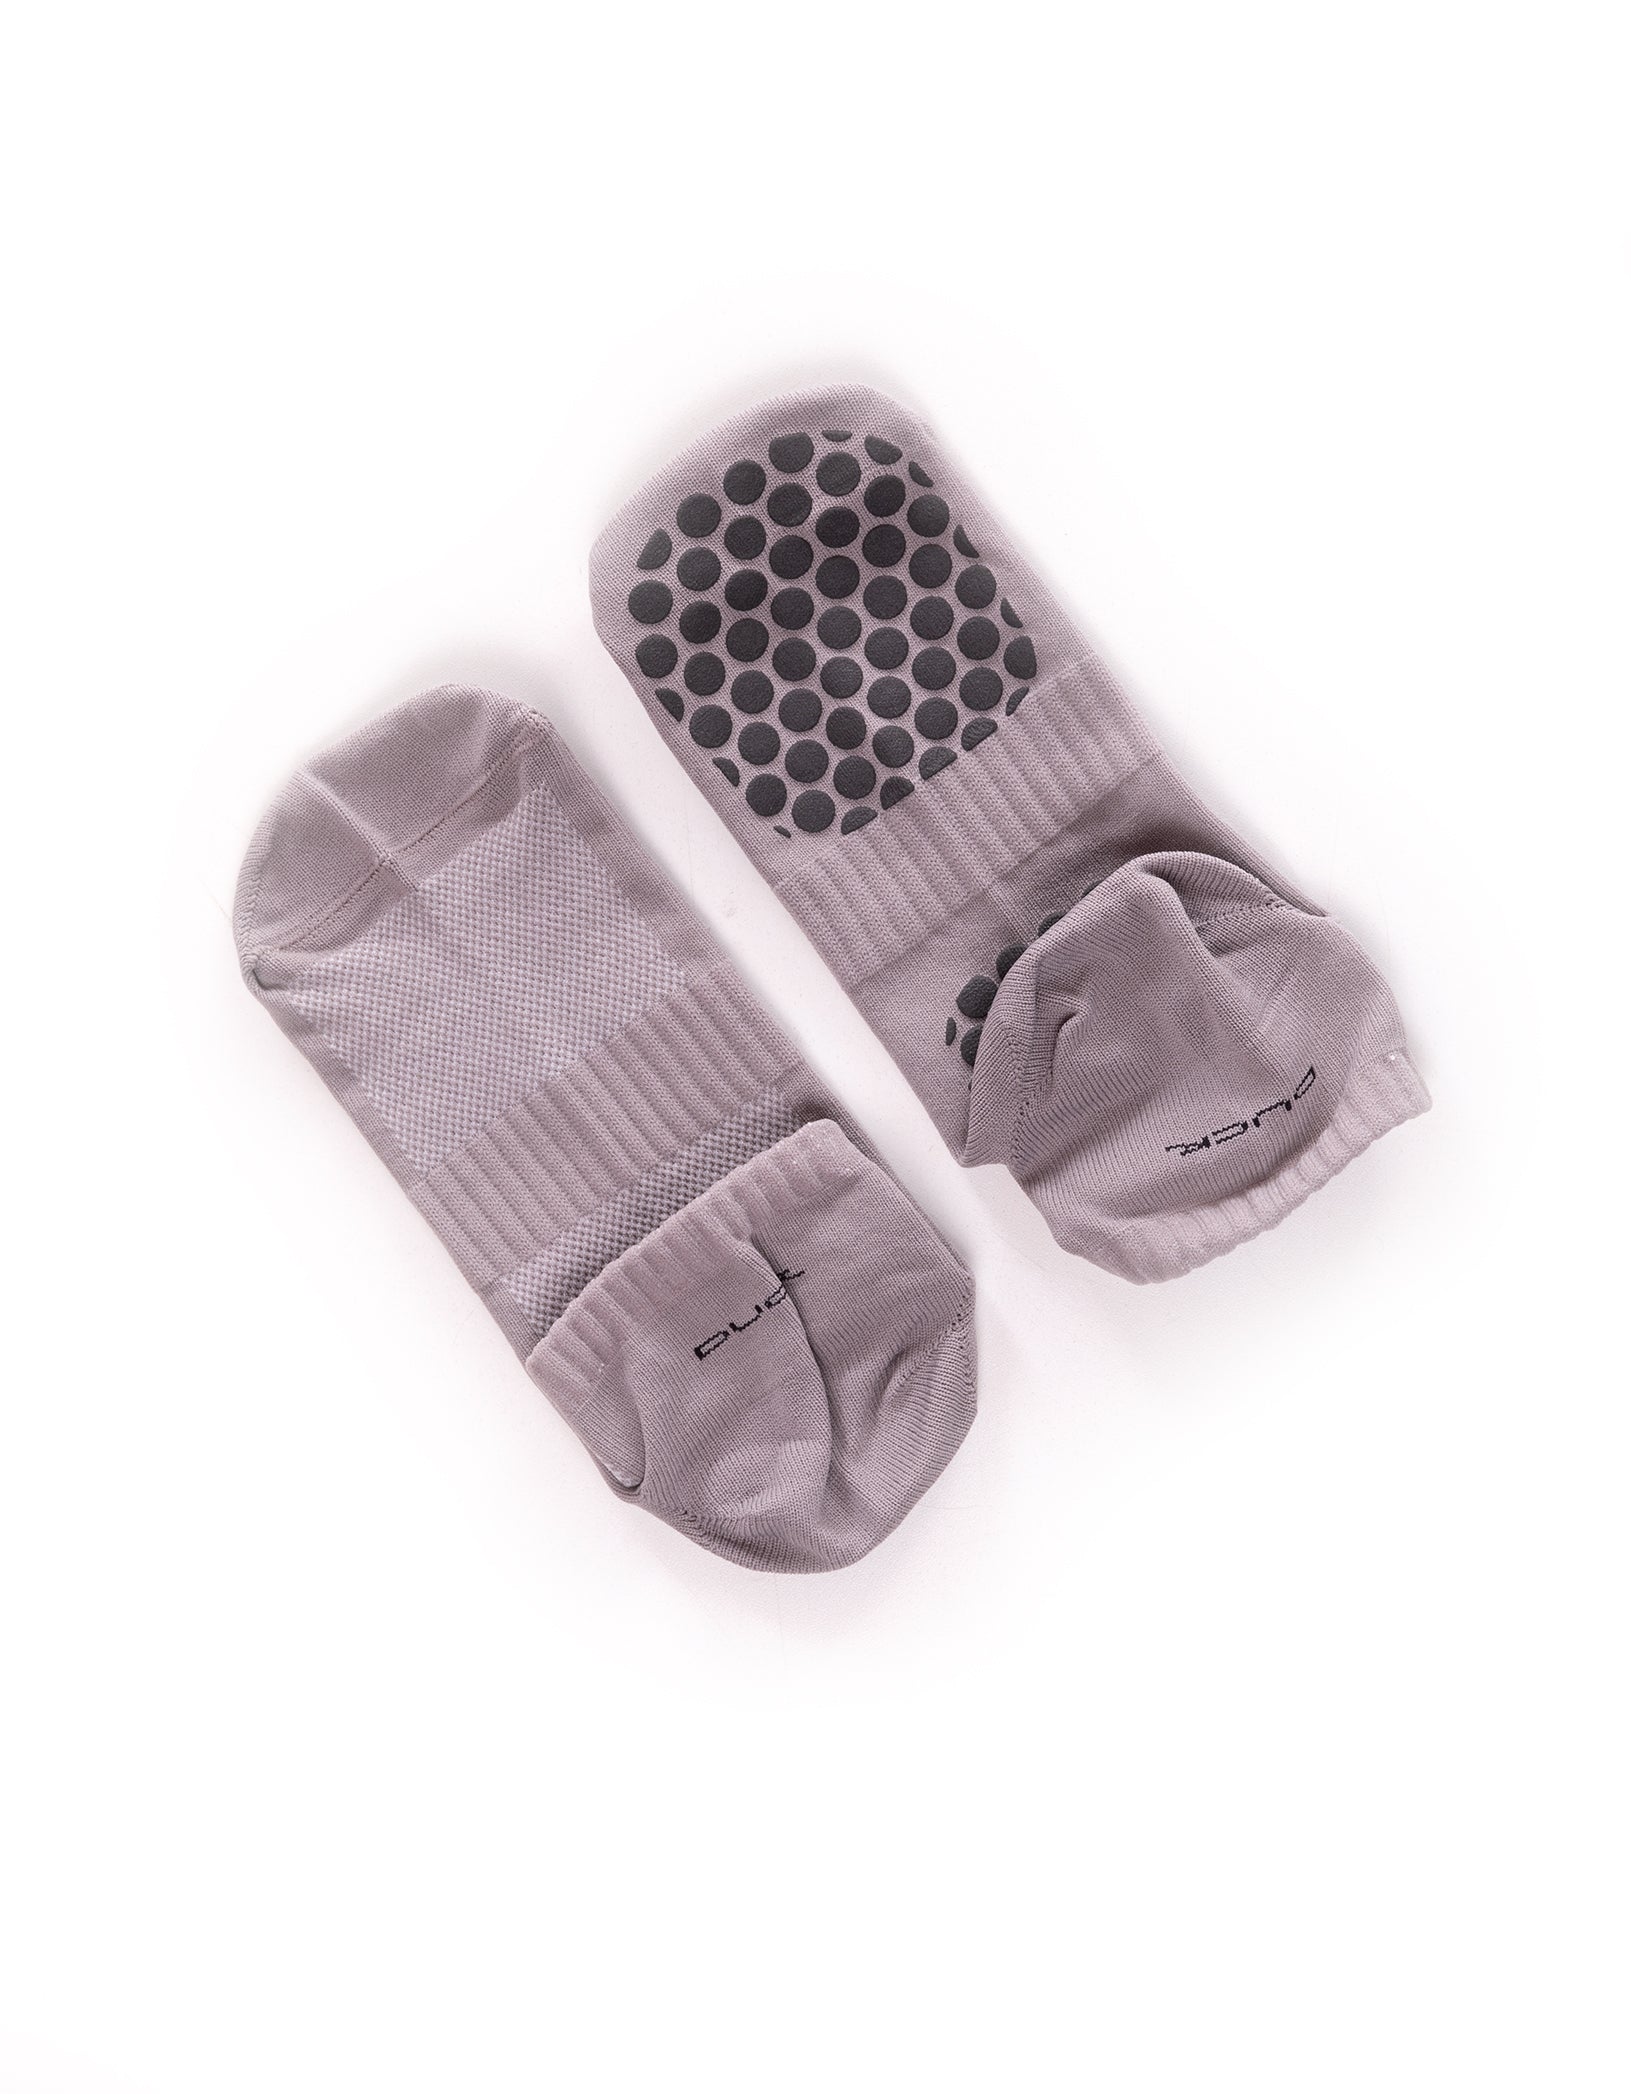 Vestem - Socks With Non-slip Blend - MEI03.C0013